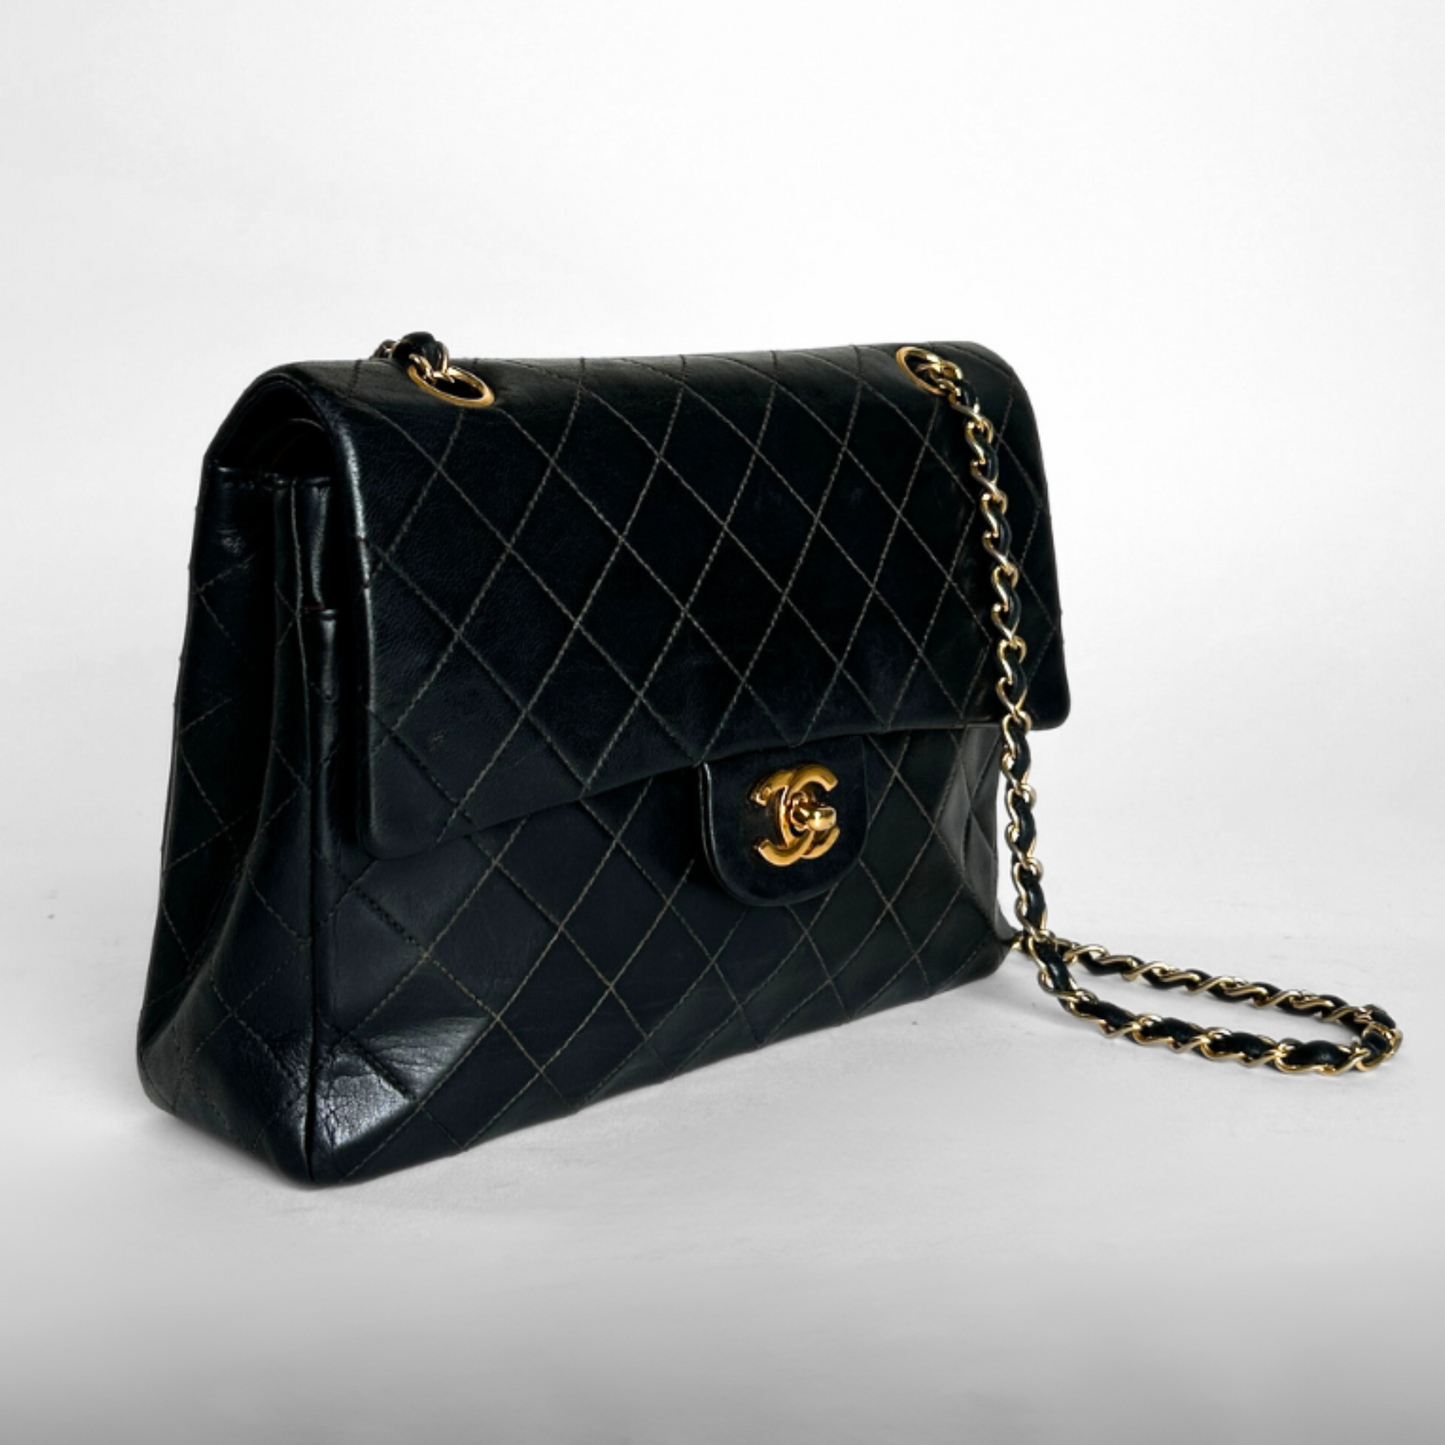 Chanel Chanel Firkantet dobbeltværelse Flap Bag Klassisk lammeskinds læder - skuldertaske - Etoile Luxury Vintage